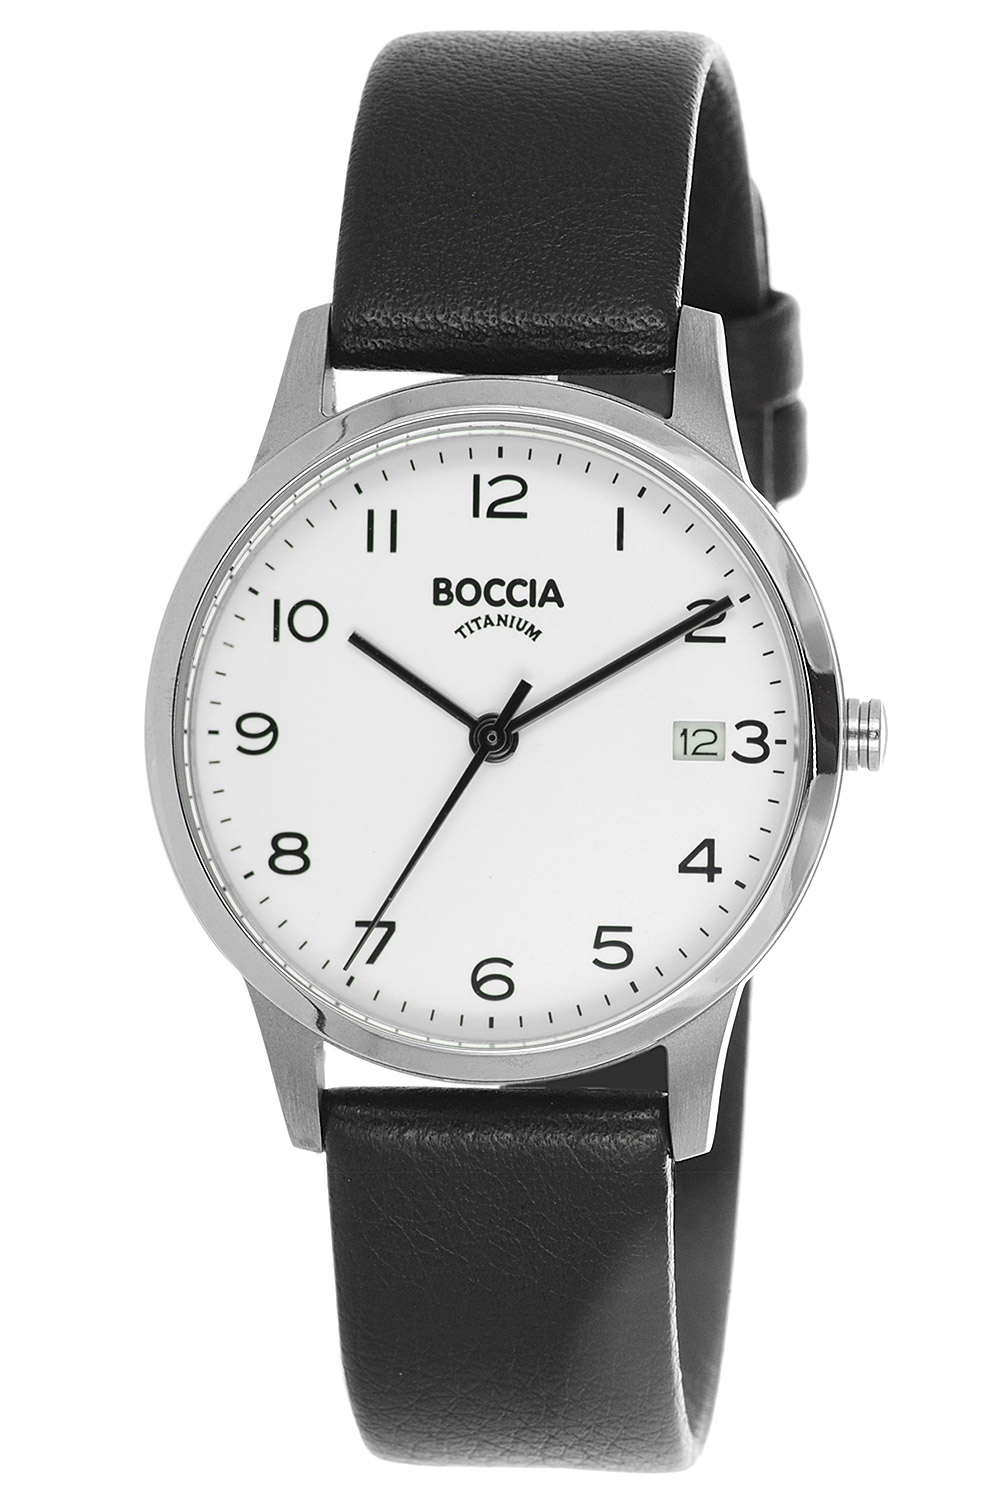 Boccia Damenuhren Uhren uhrcenter günstig • Shop online kaufen